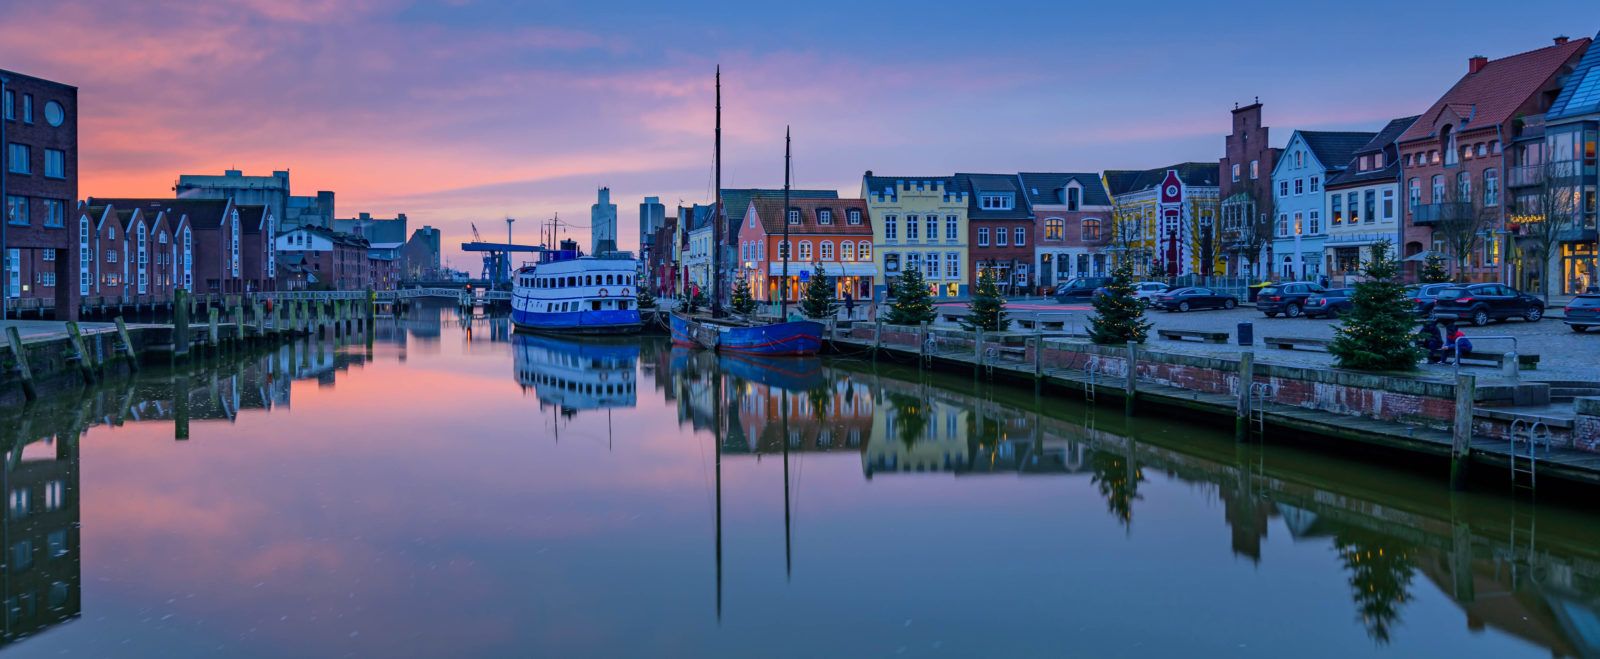 Ist Kiel eine schöne Stadt?